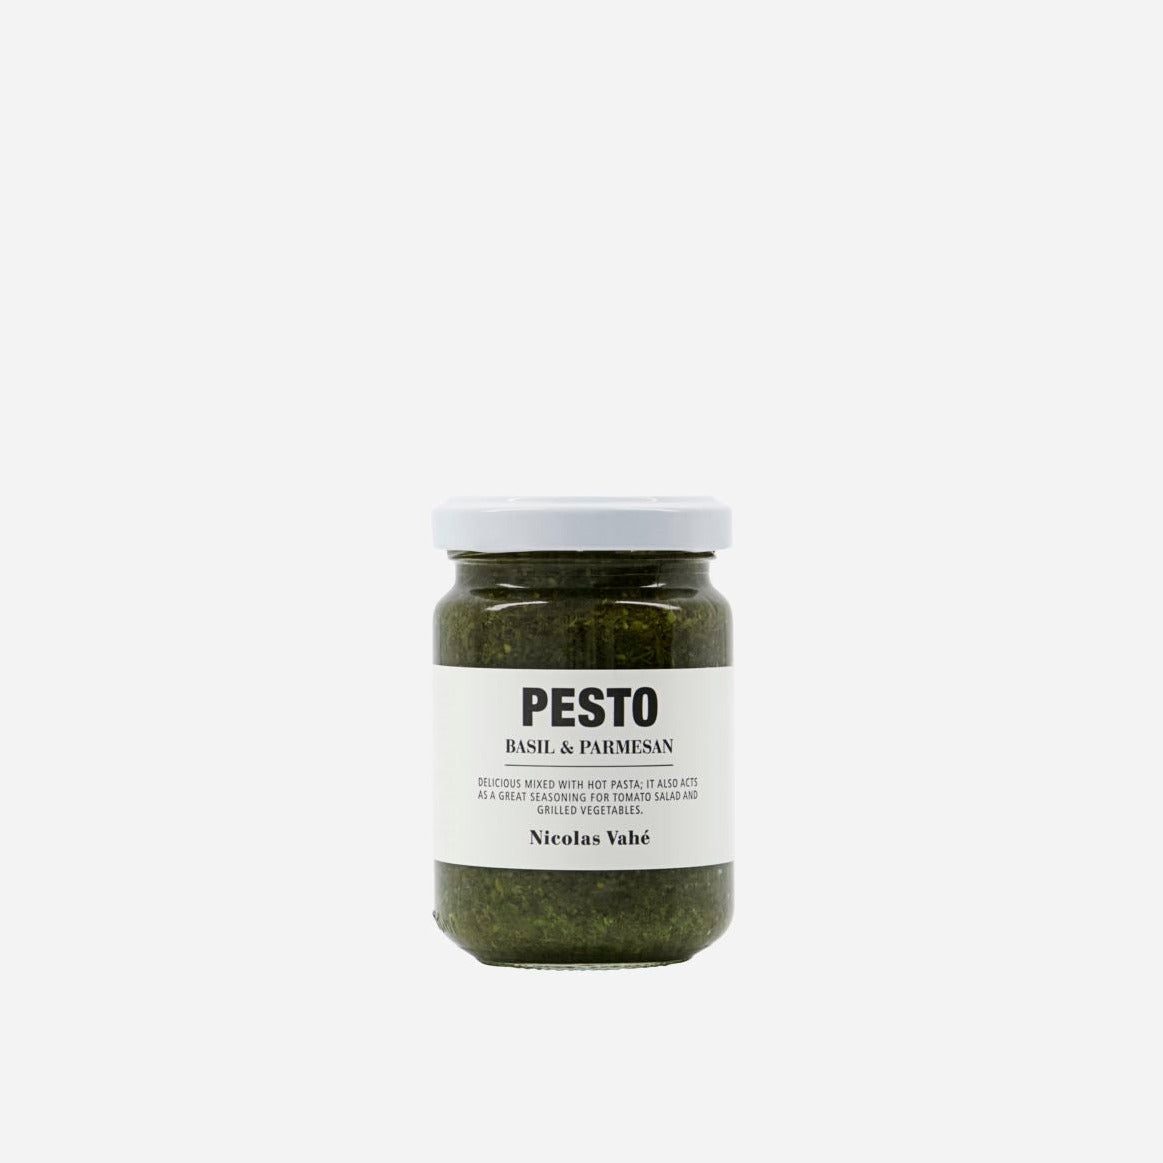 Pesto, basil & parmesan